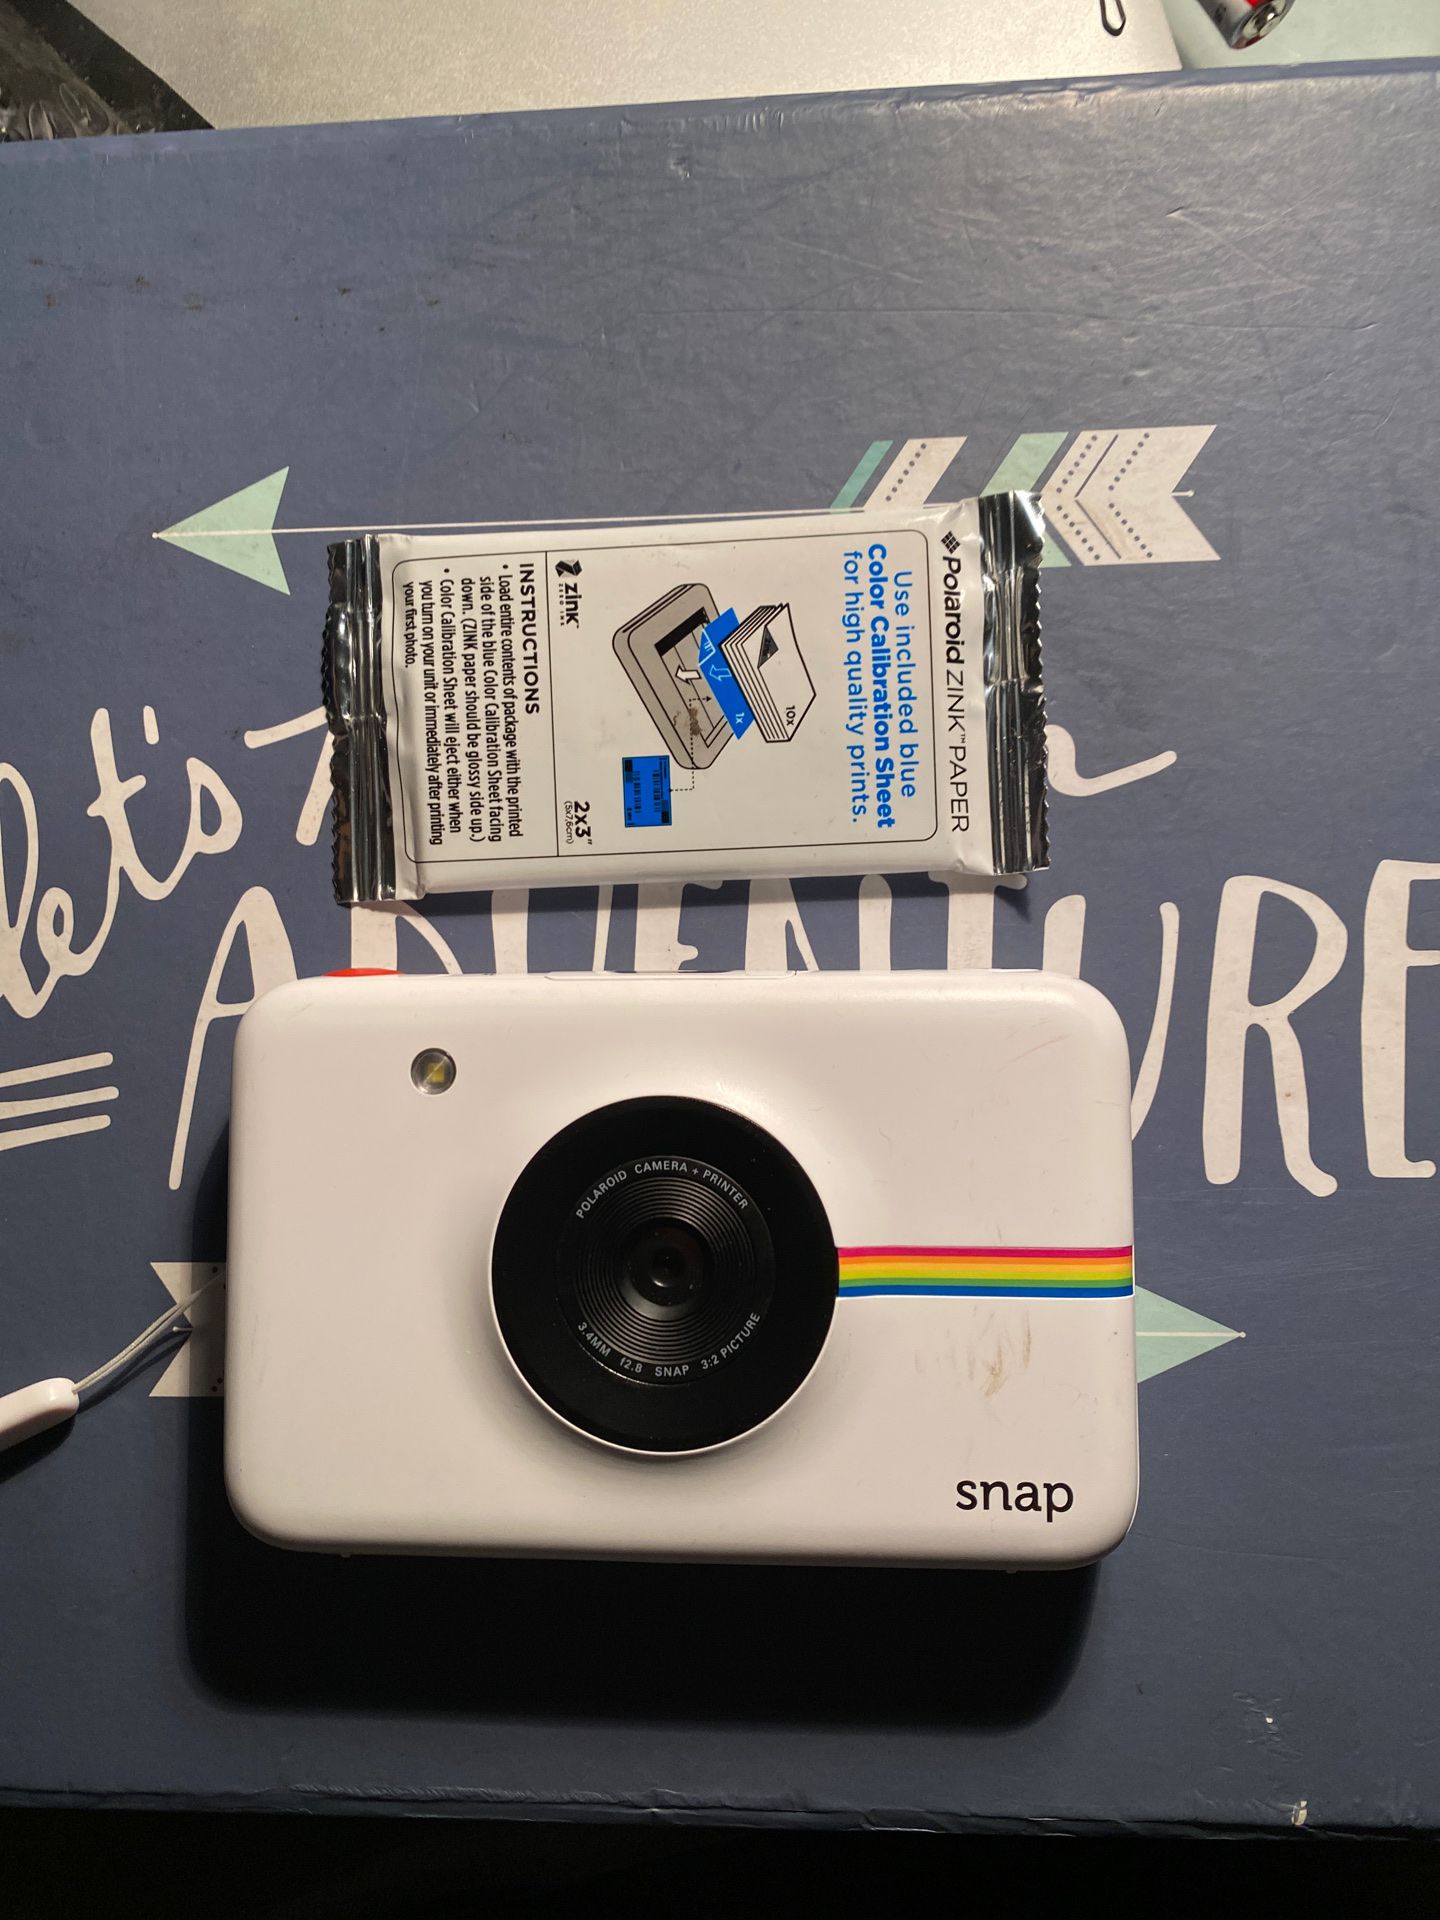 Polaroid snap camera with film